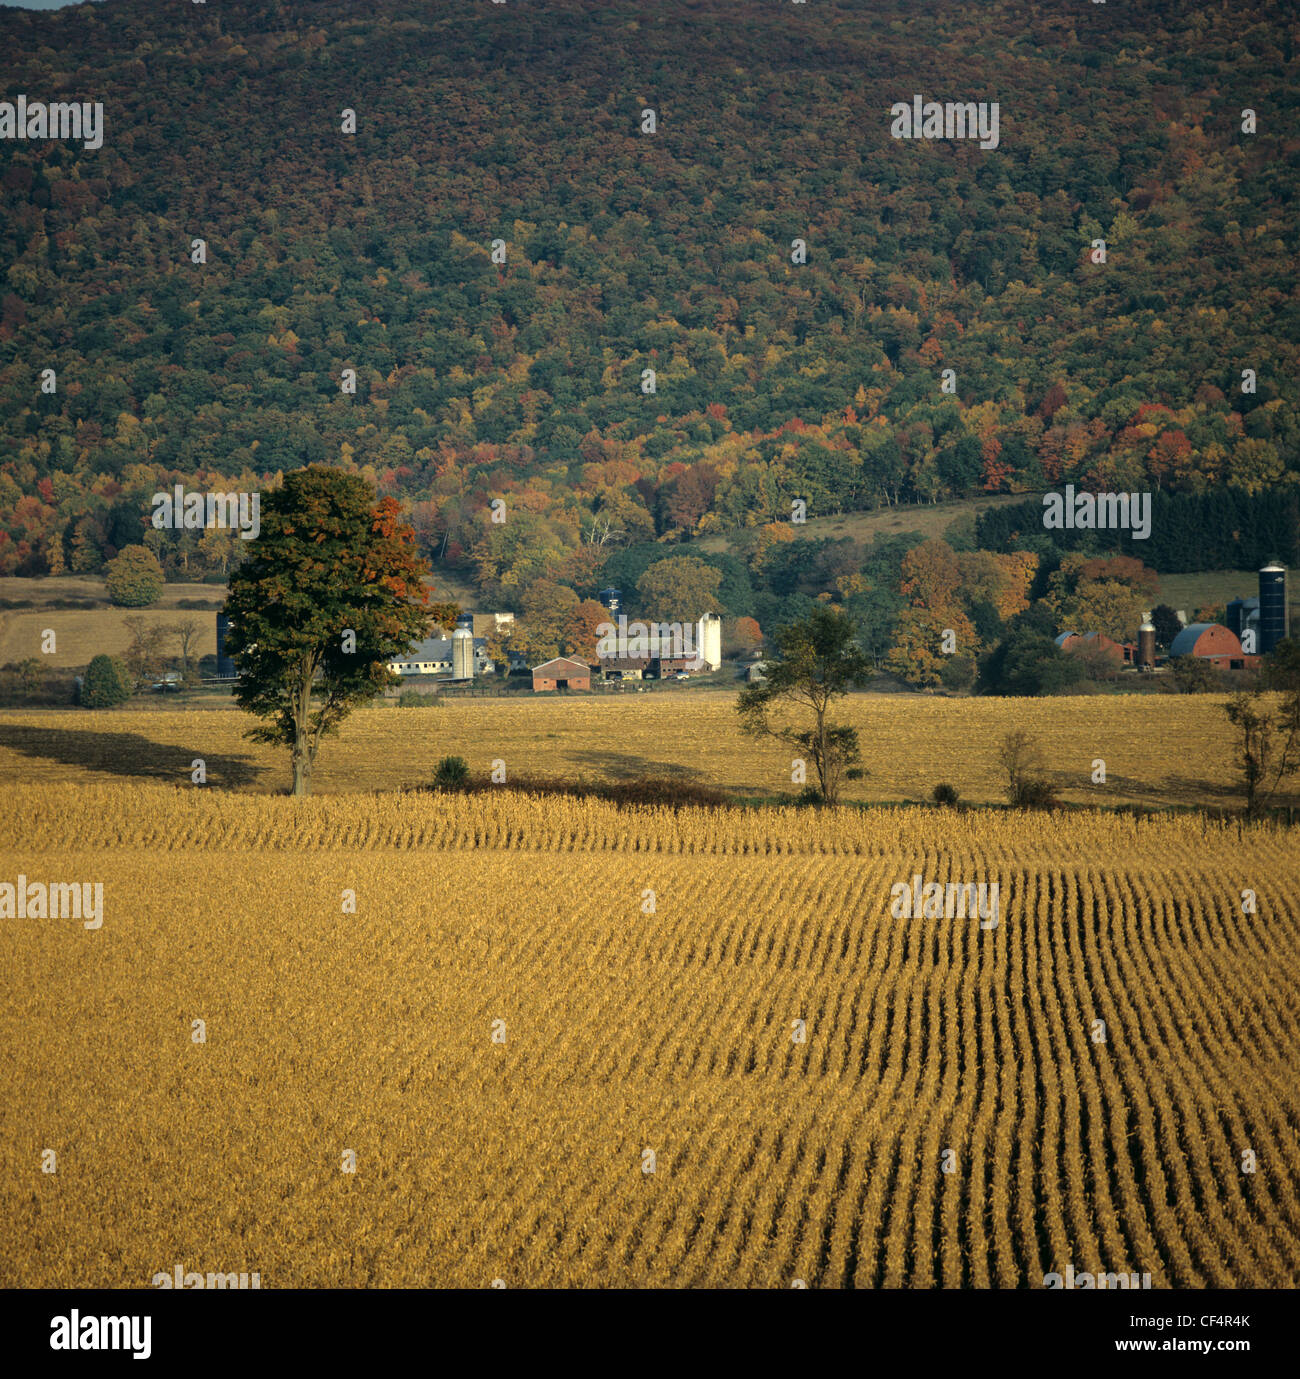 Trocken Futter Mais Ernte, geerntet Teil, mit Hof und Bäumen im Herbst Farbe, NY, USA Stockfoto